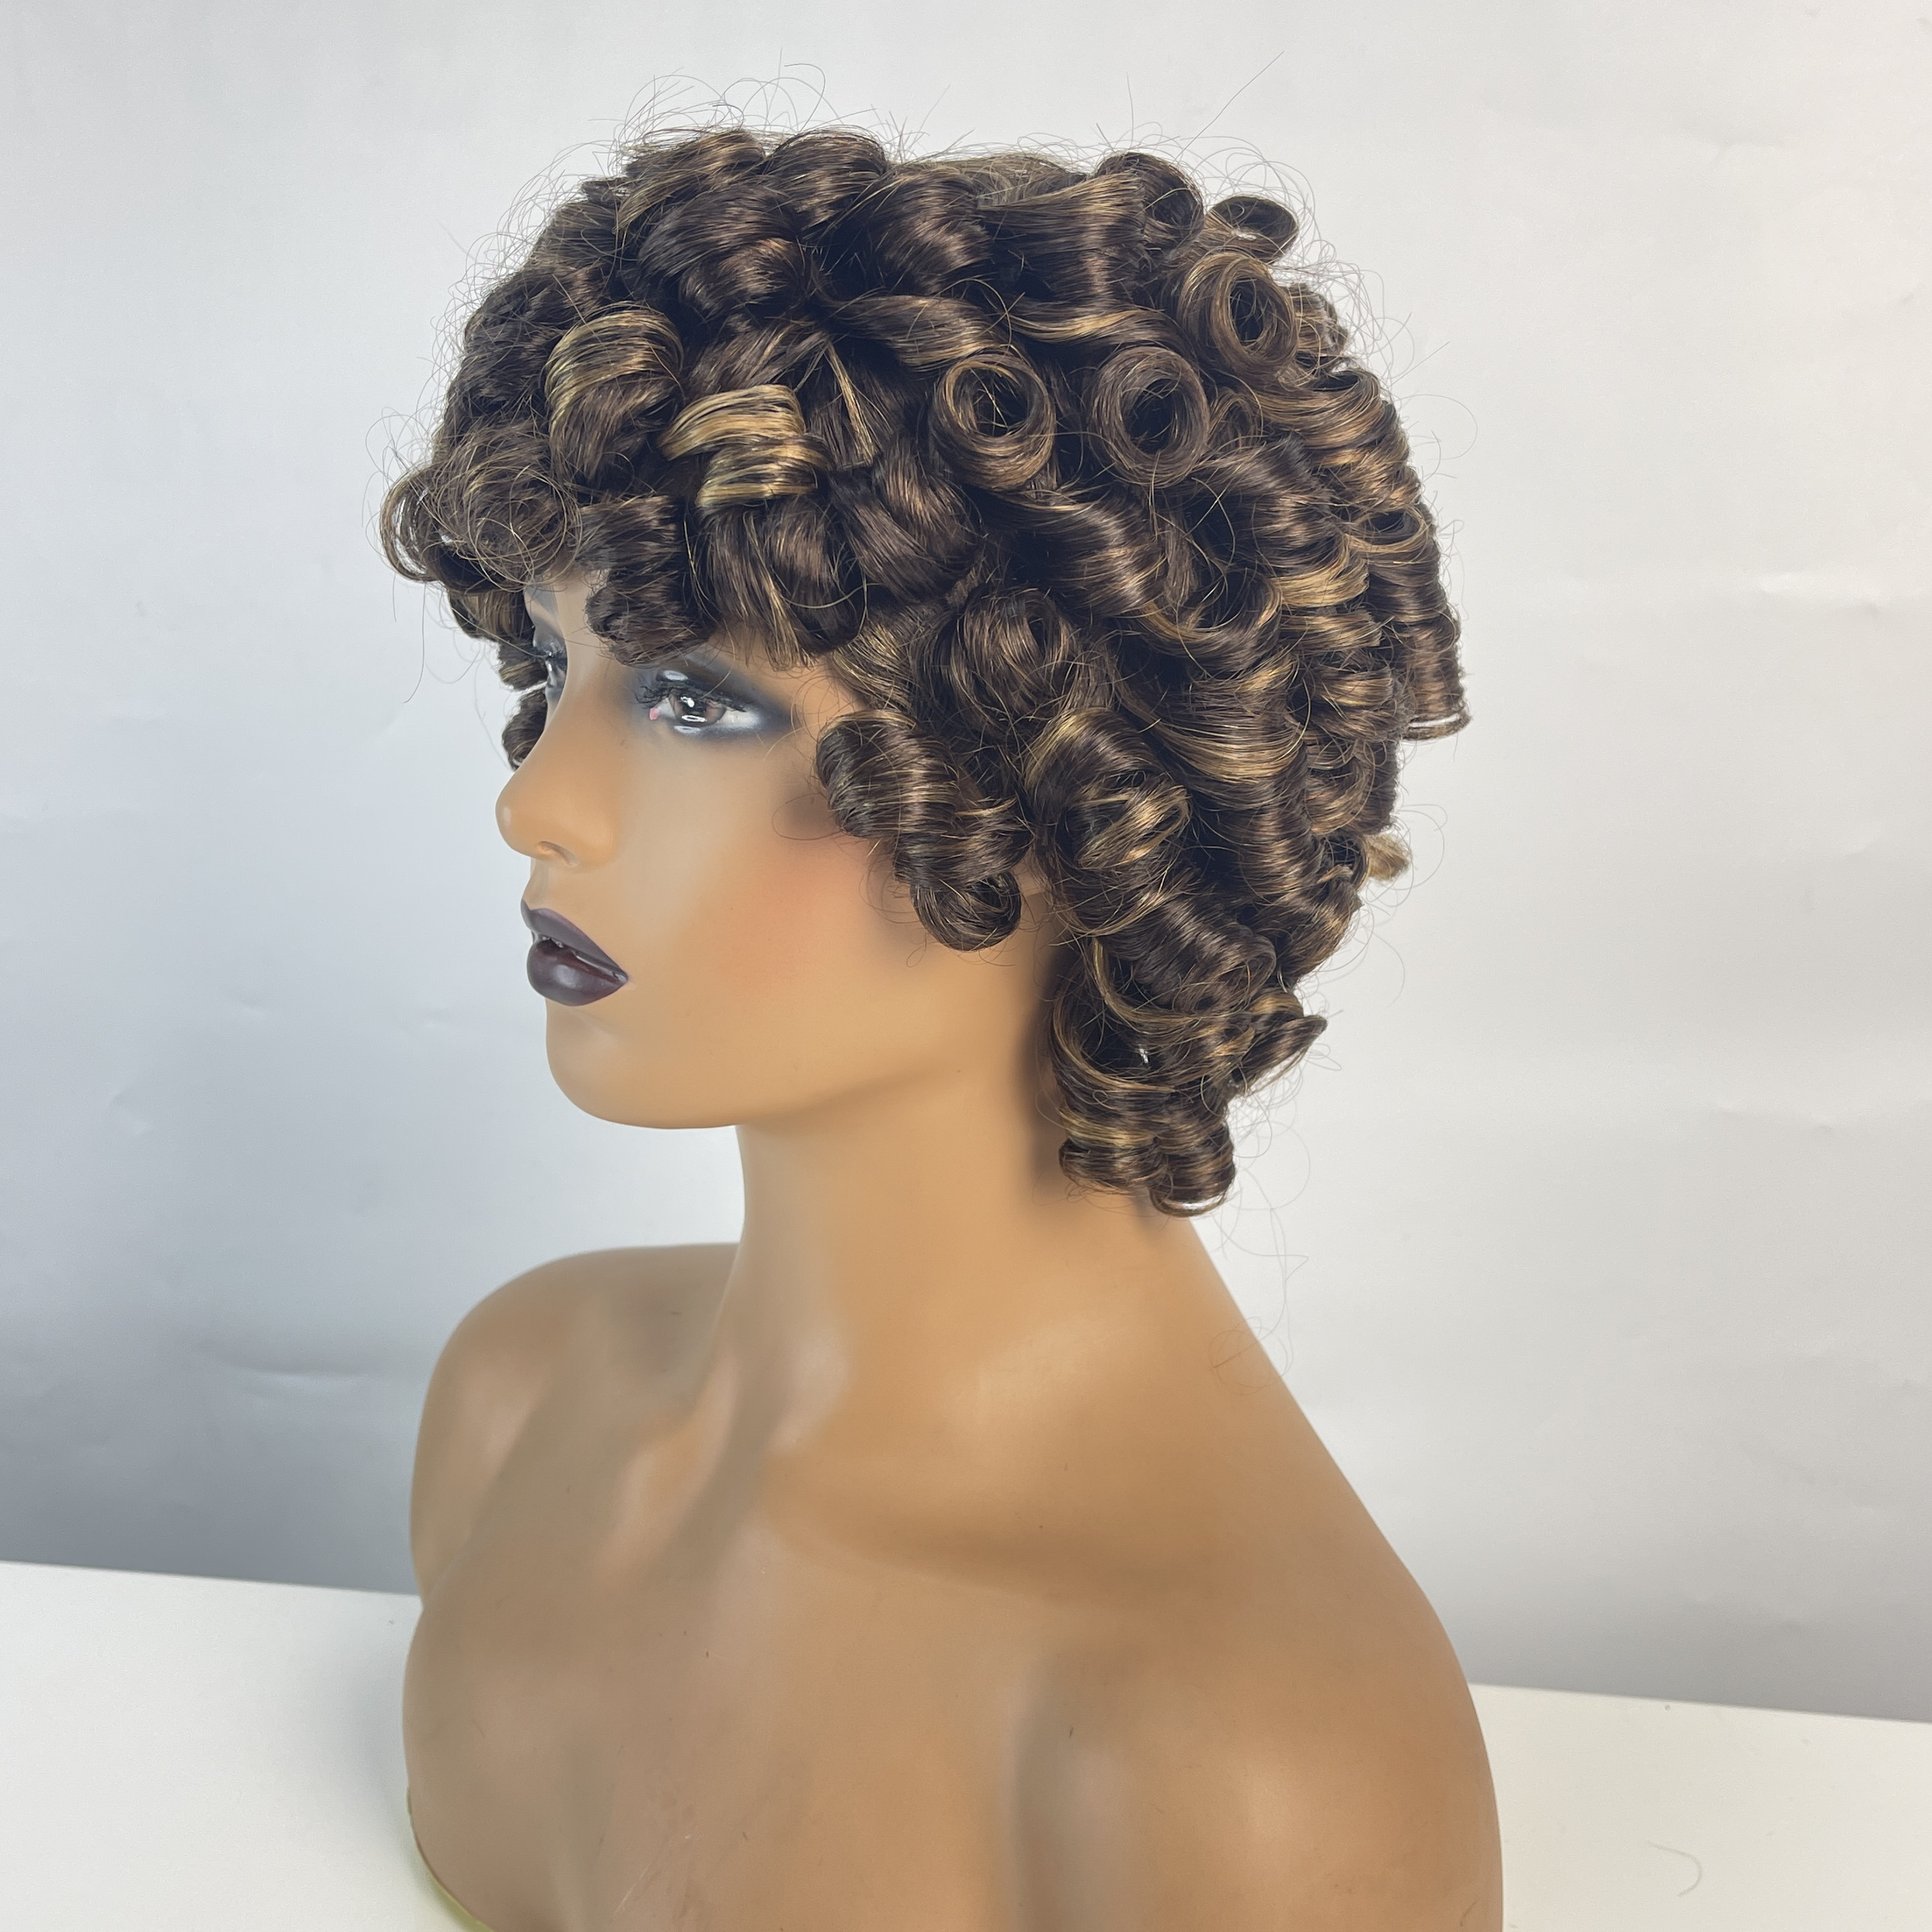 Peluca rizada corta y rizada para mujeres pelucas de cabello humano marrón negro